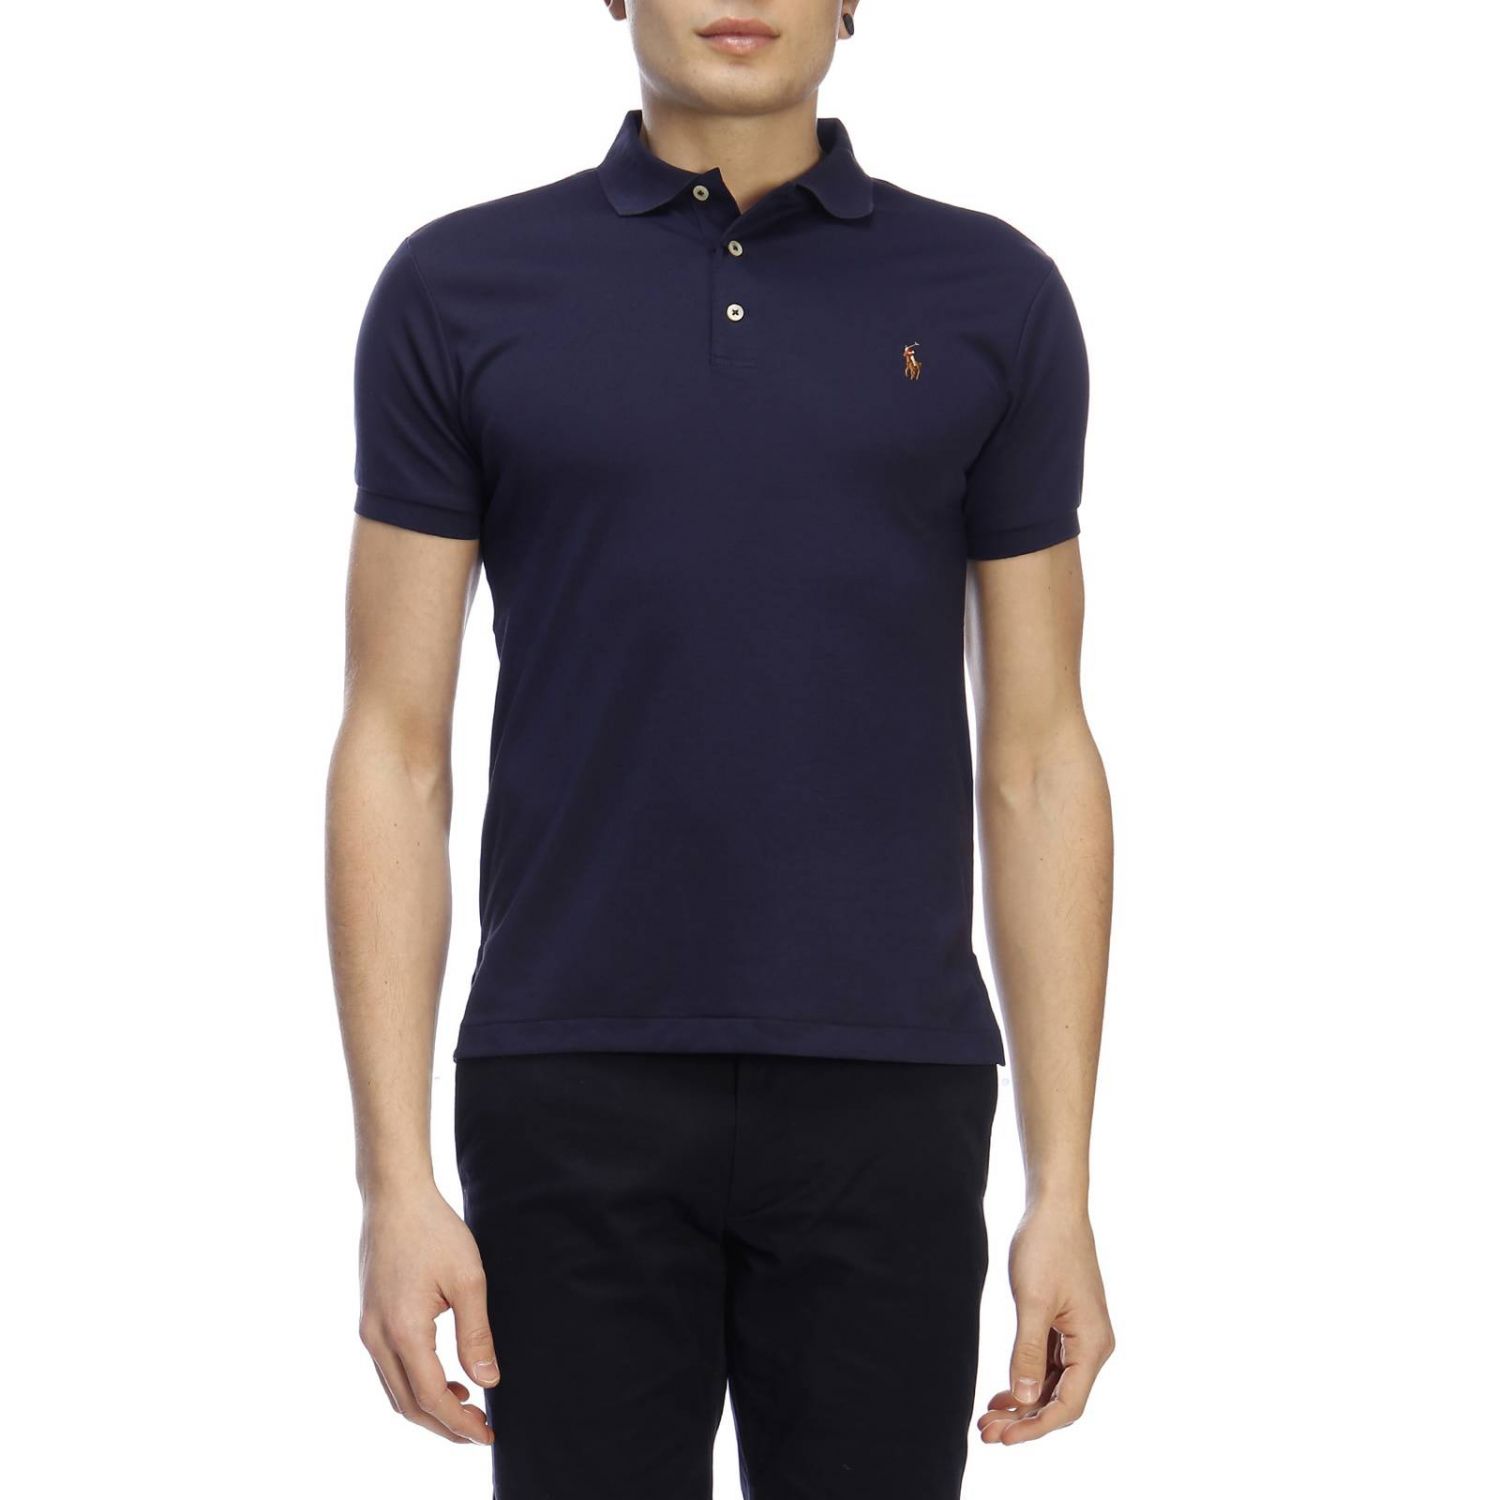 Polo Ralph Lauren Outlet: T-shirt men - Navy | T-Shirt Polo Ralph ...